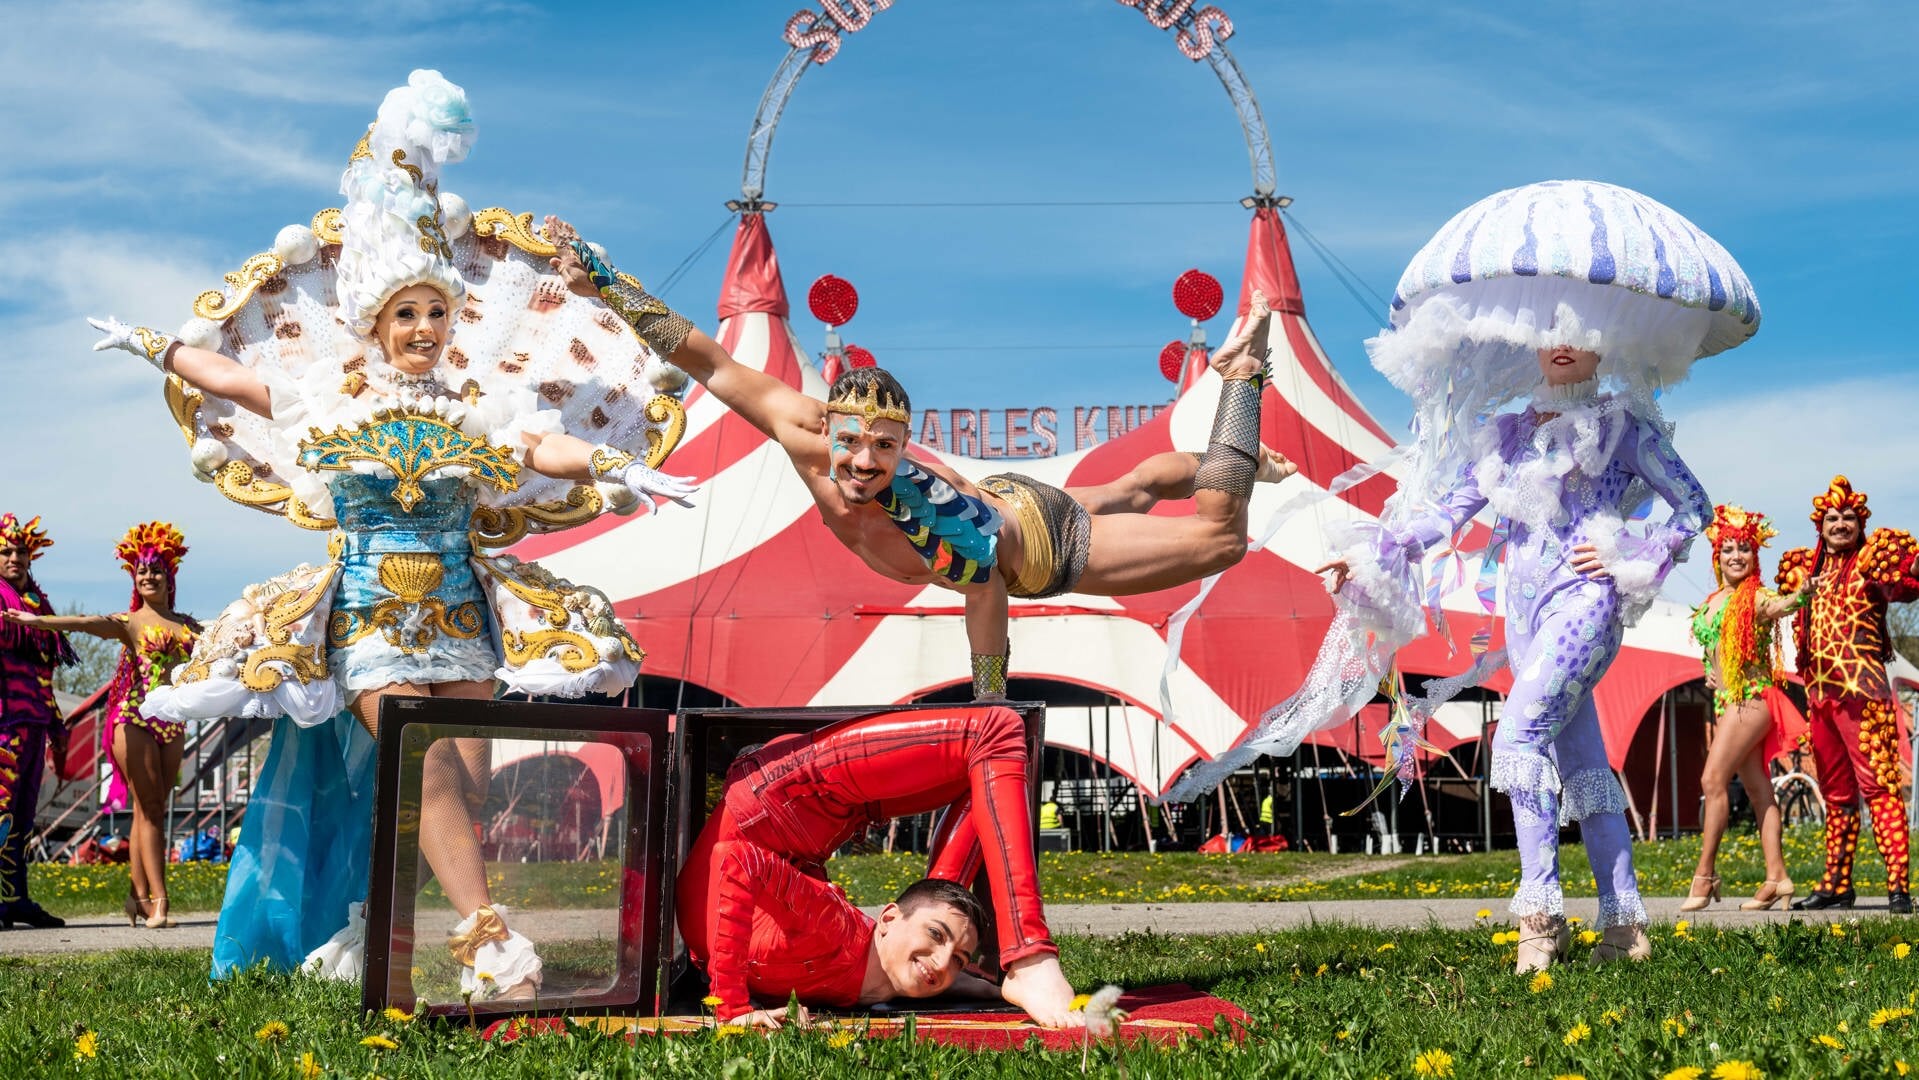 Fast nur noch menschliche Artisten: Der Zirkus Charles Knie hat sein Programm völlig umgestellt. Foto: